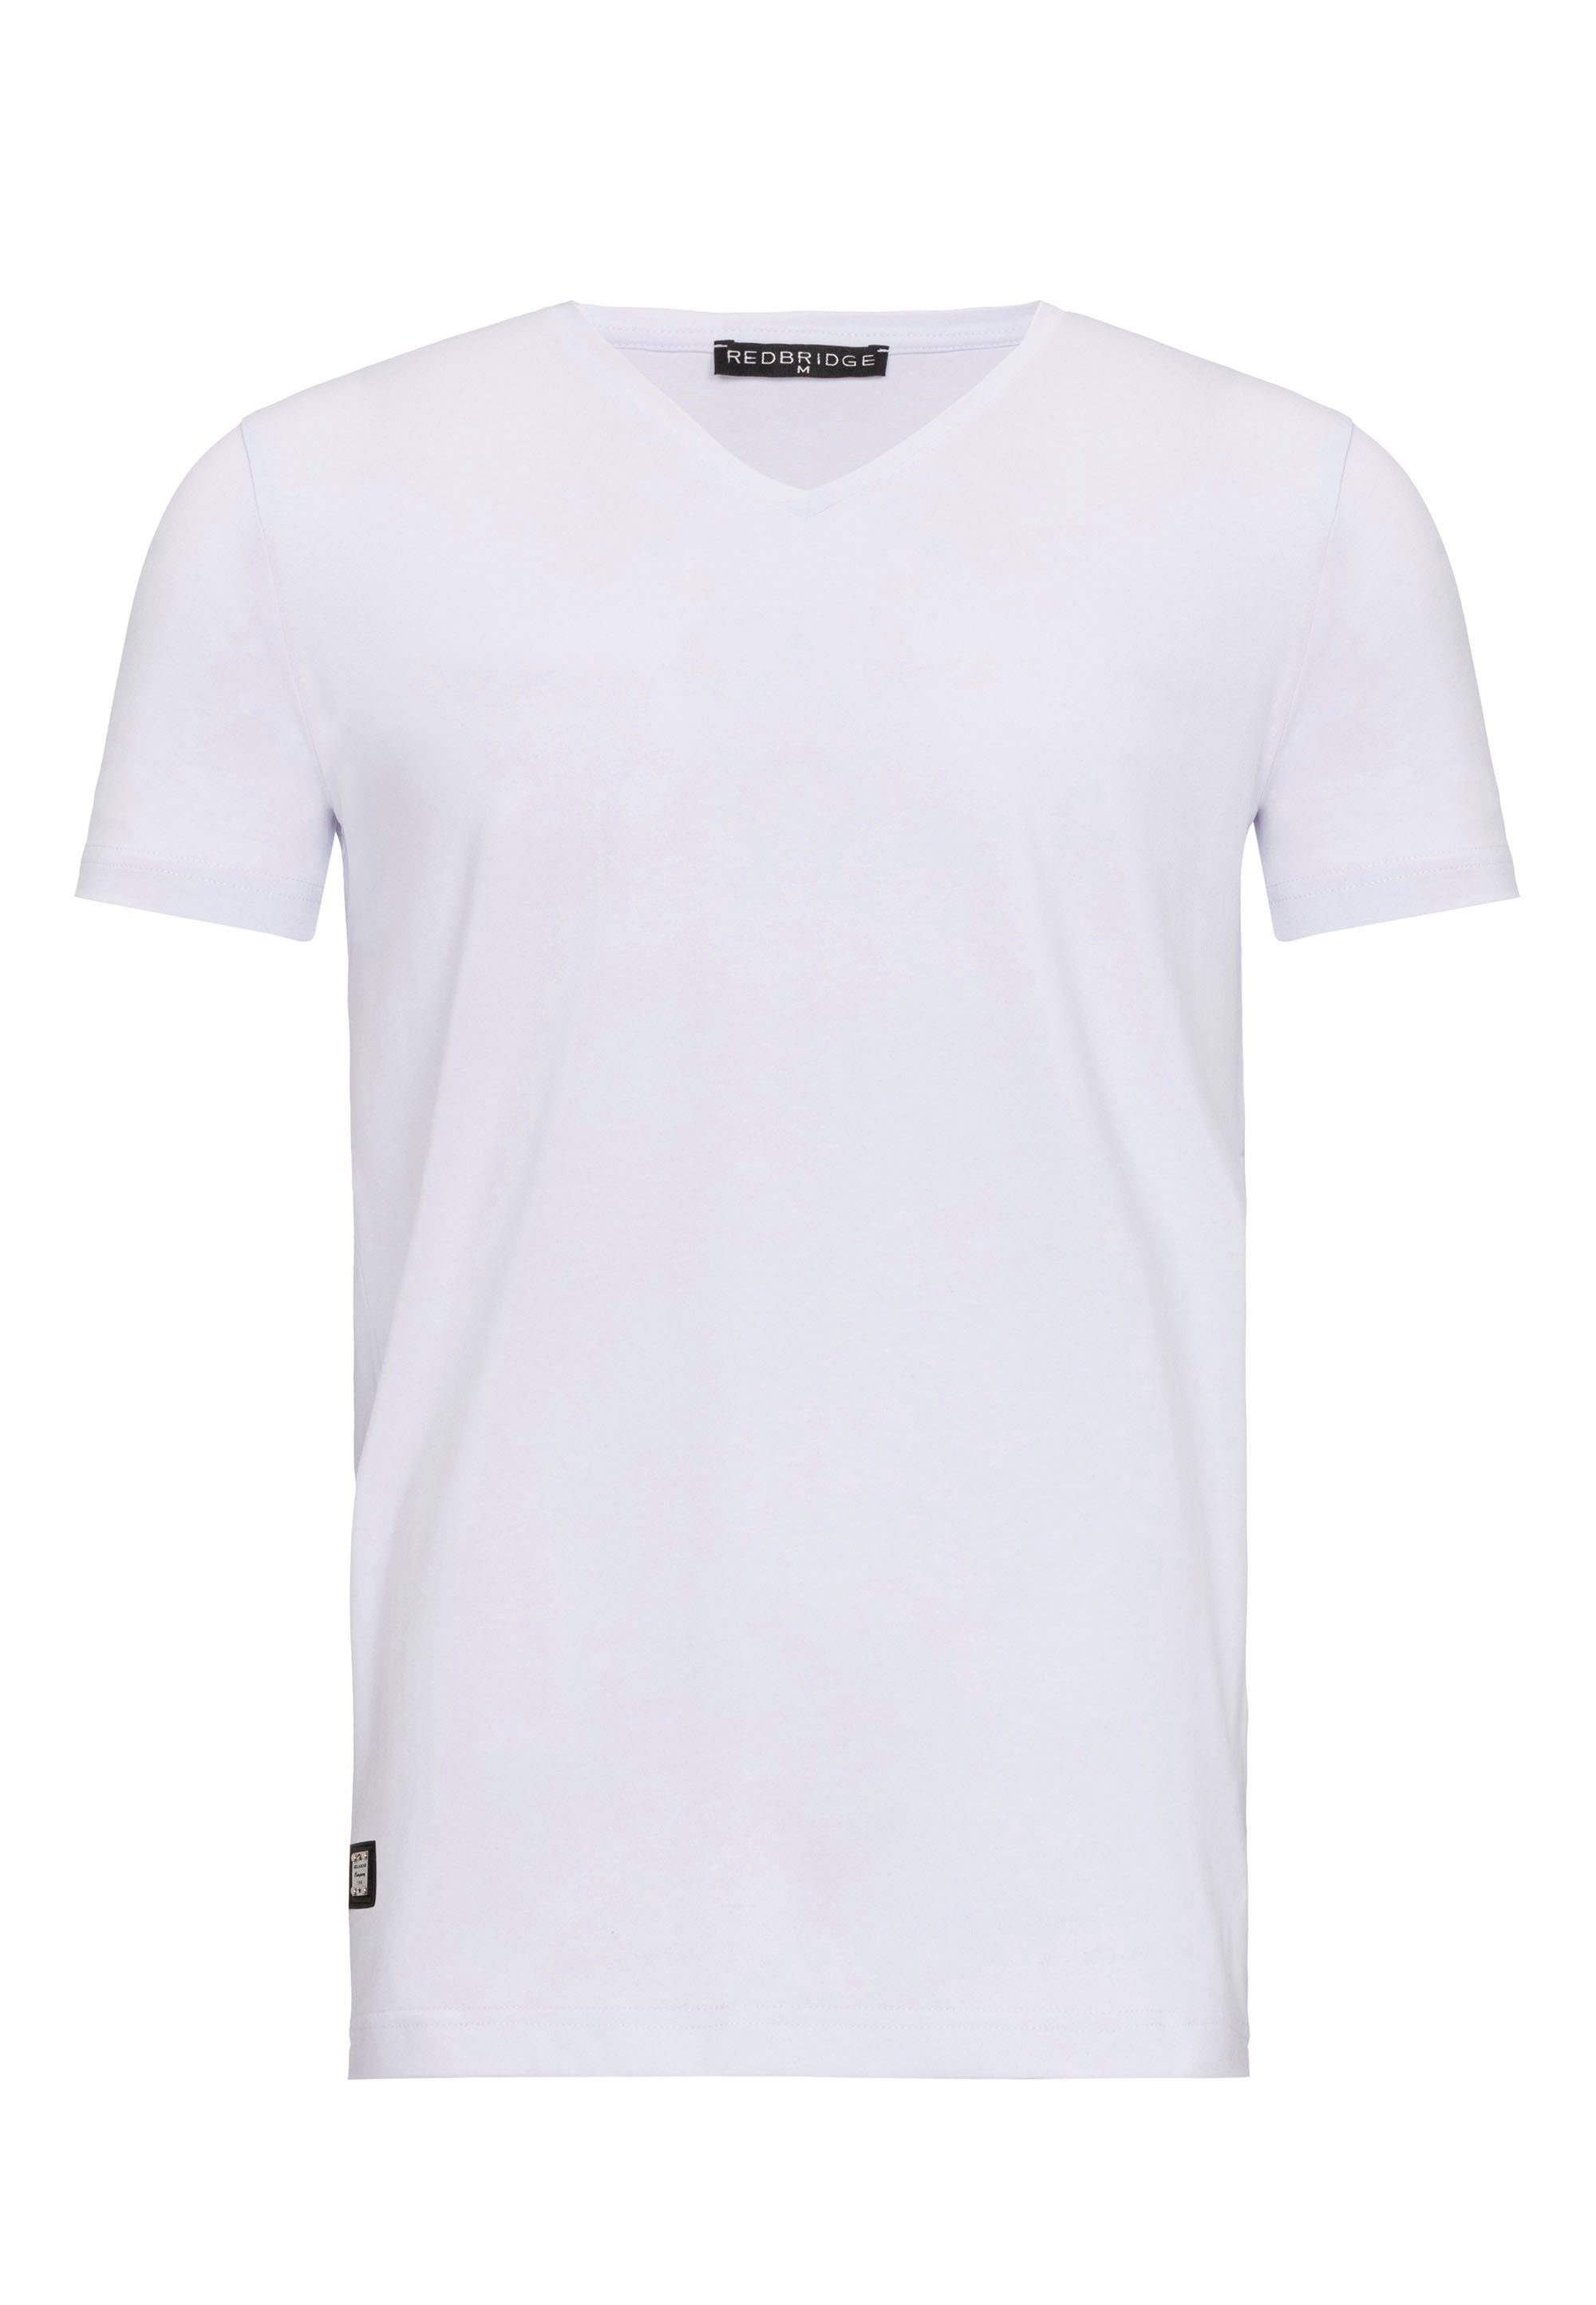 RedBridge Dange modischem weiß T-Shirt mit V-Ausschnitt